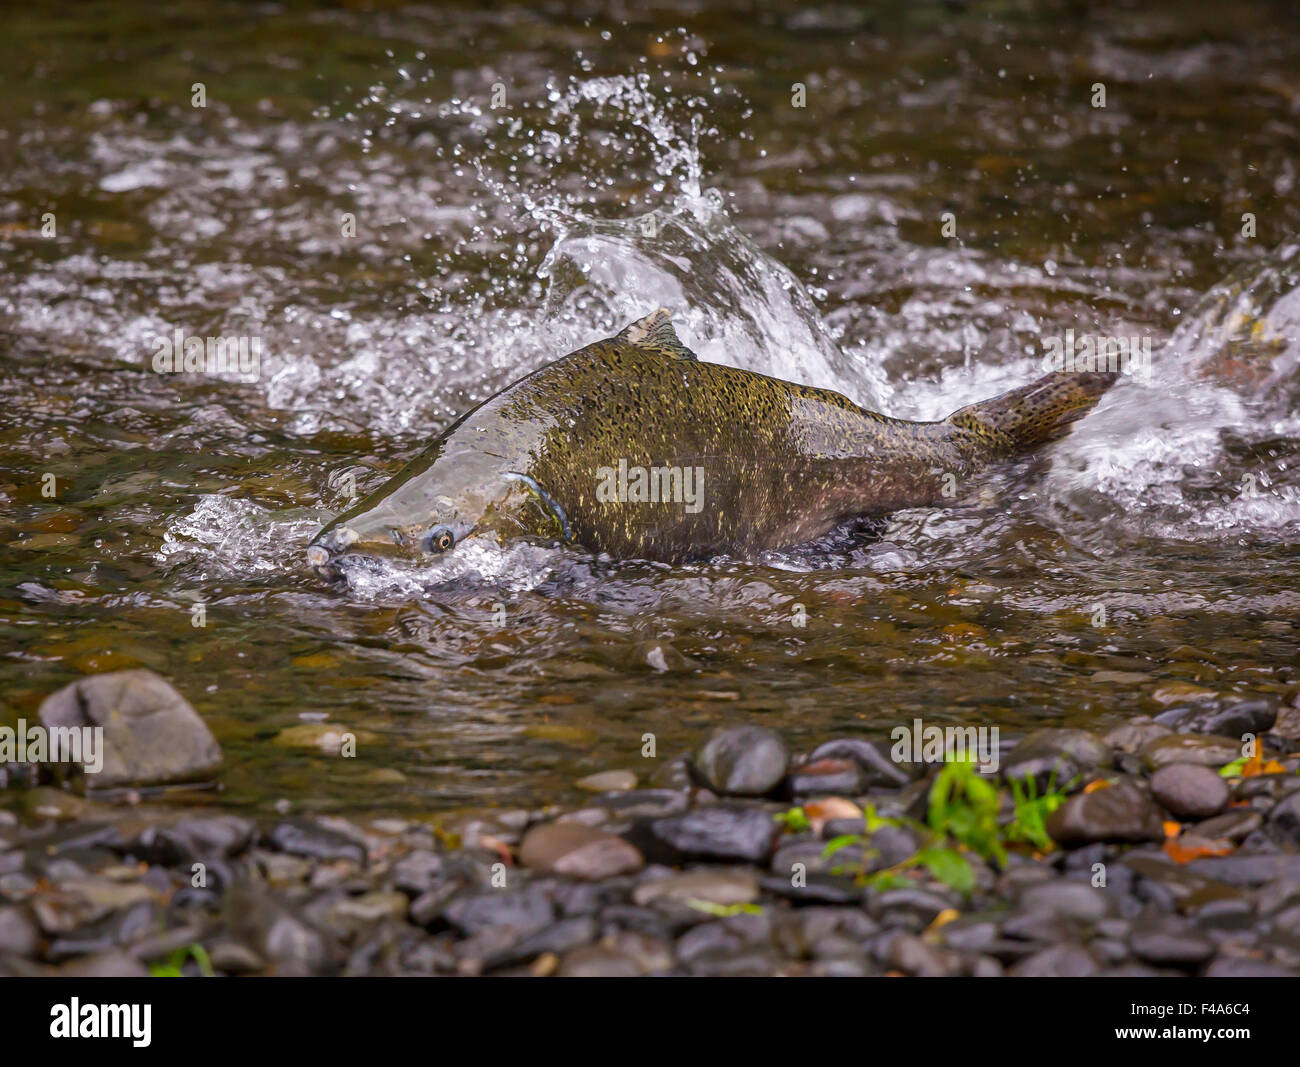 La Columbia River Gorge, OREGON, Stati Uniti d'America - Salmone eseguito su Eagle Creek. Il pesce nuota fino la sua natal fiume per deporre le uova. Foto Stock